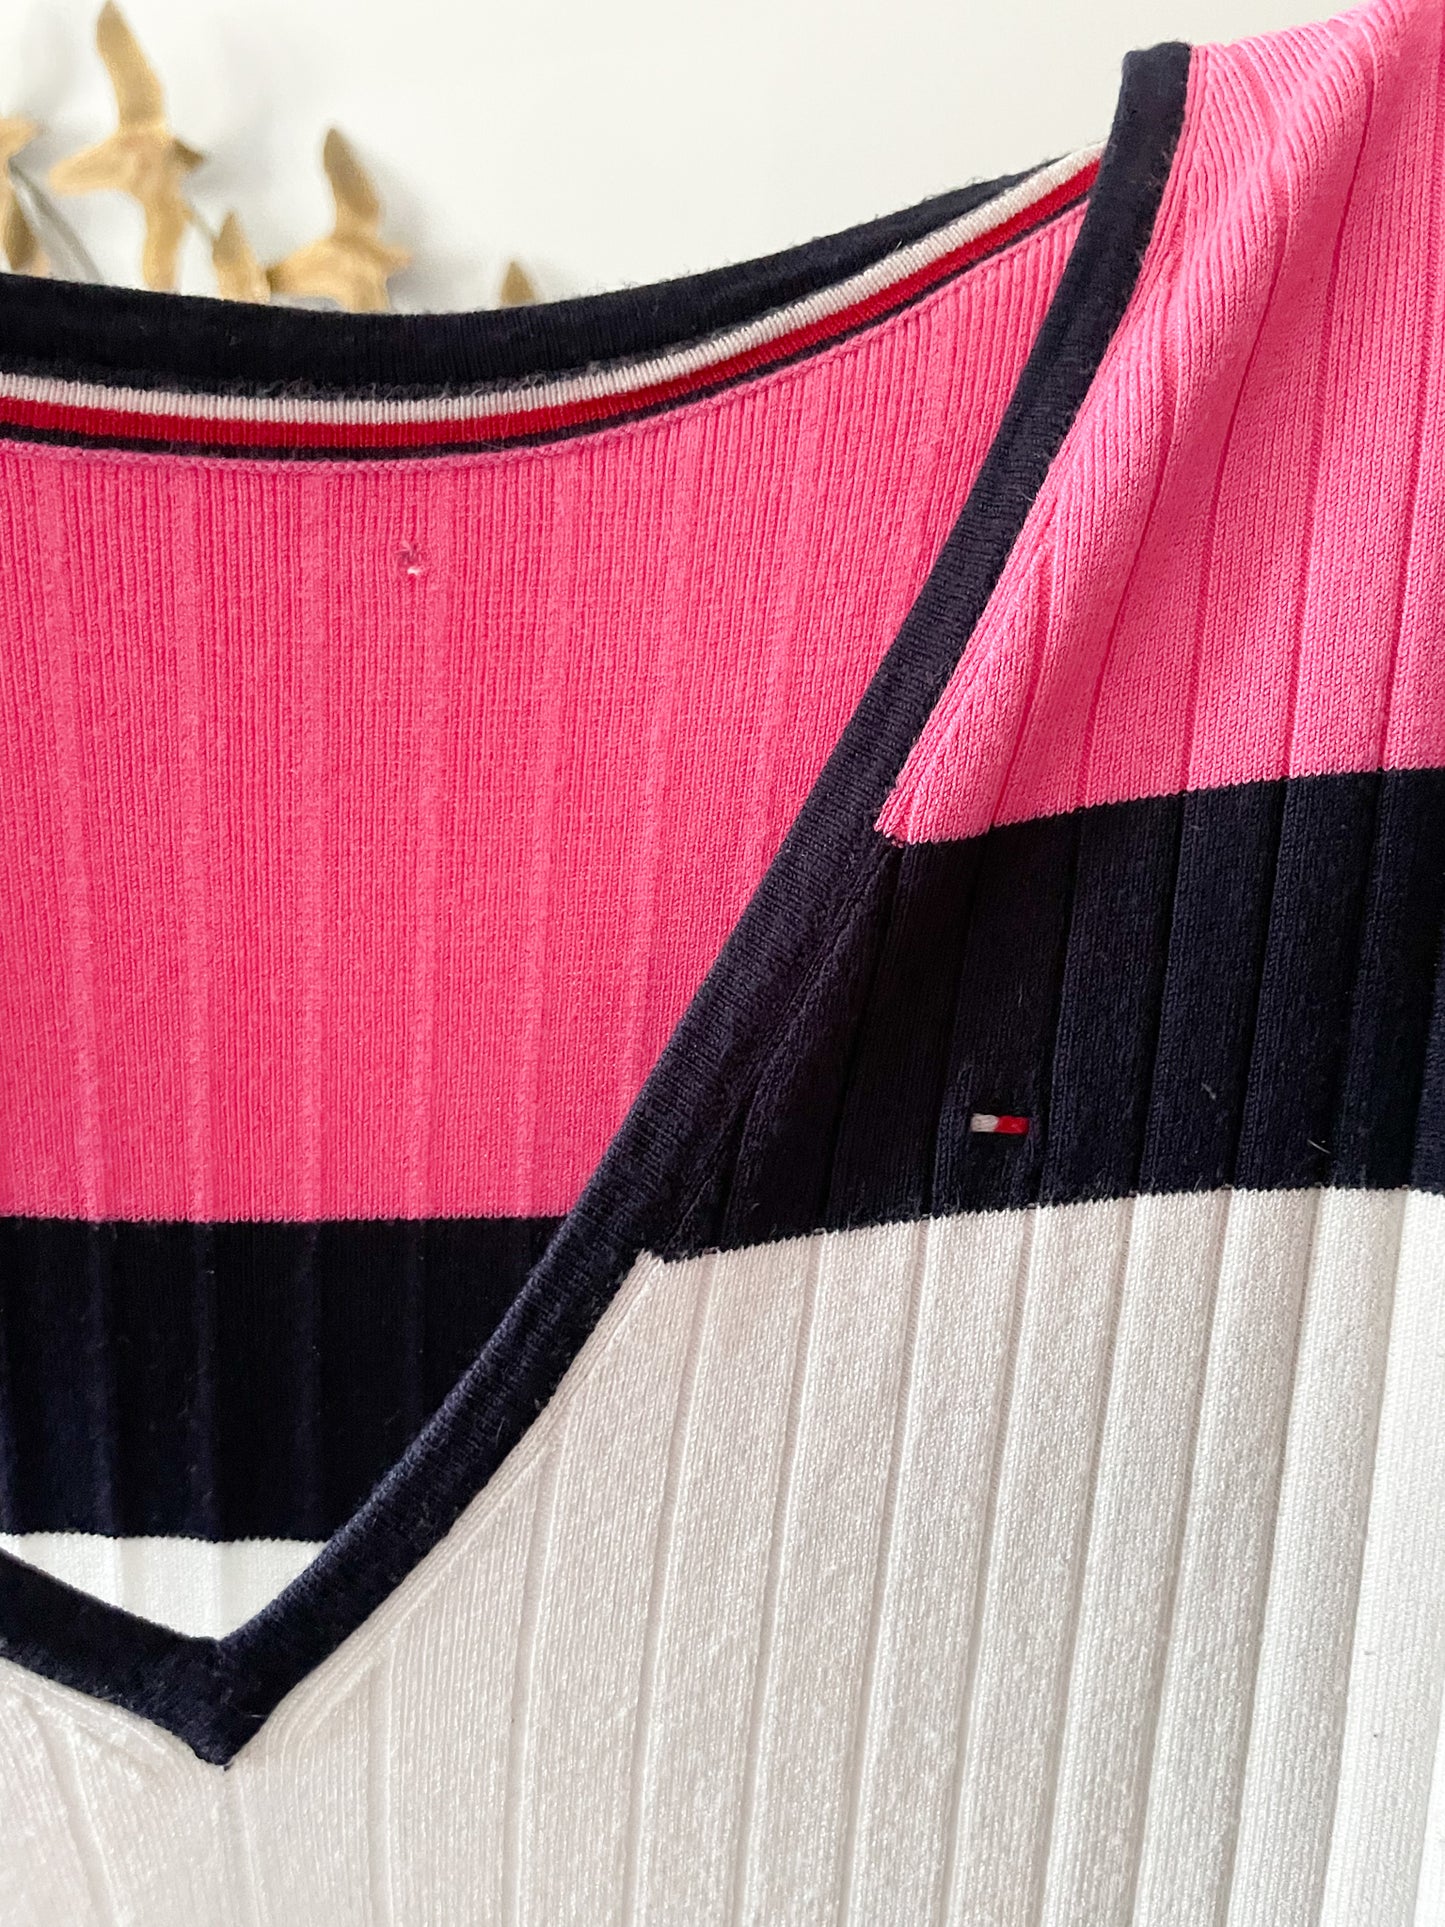 Tommy Hilfiger Navy Pink Stripe Ribbed Knit V-Neck Sleeveless Dress - M/L